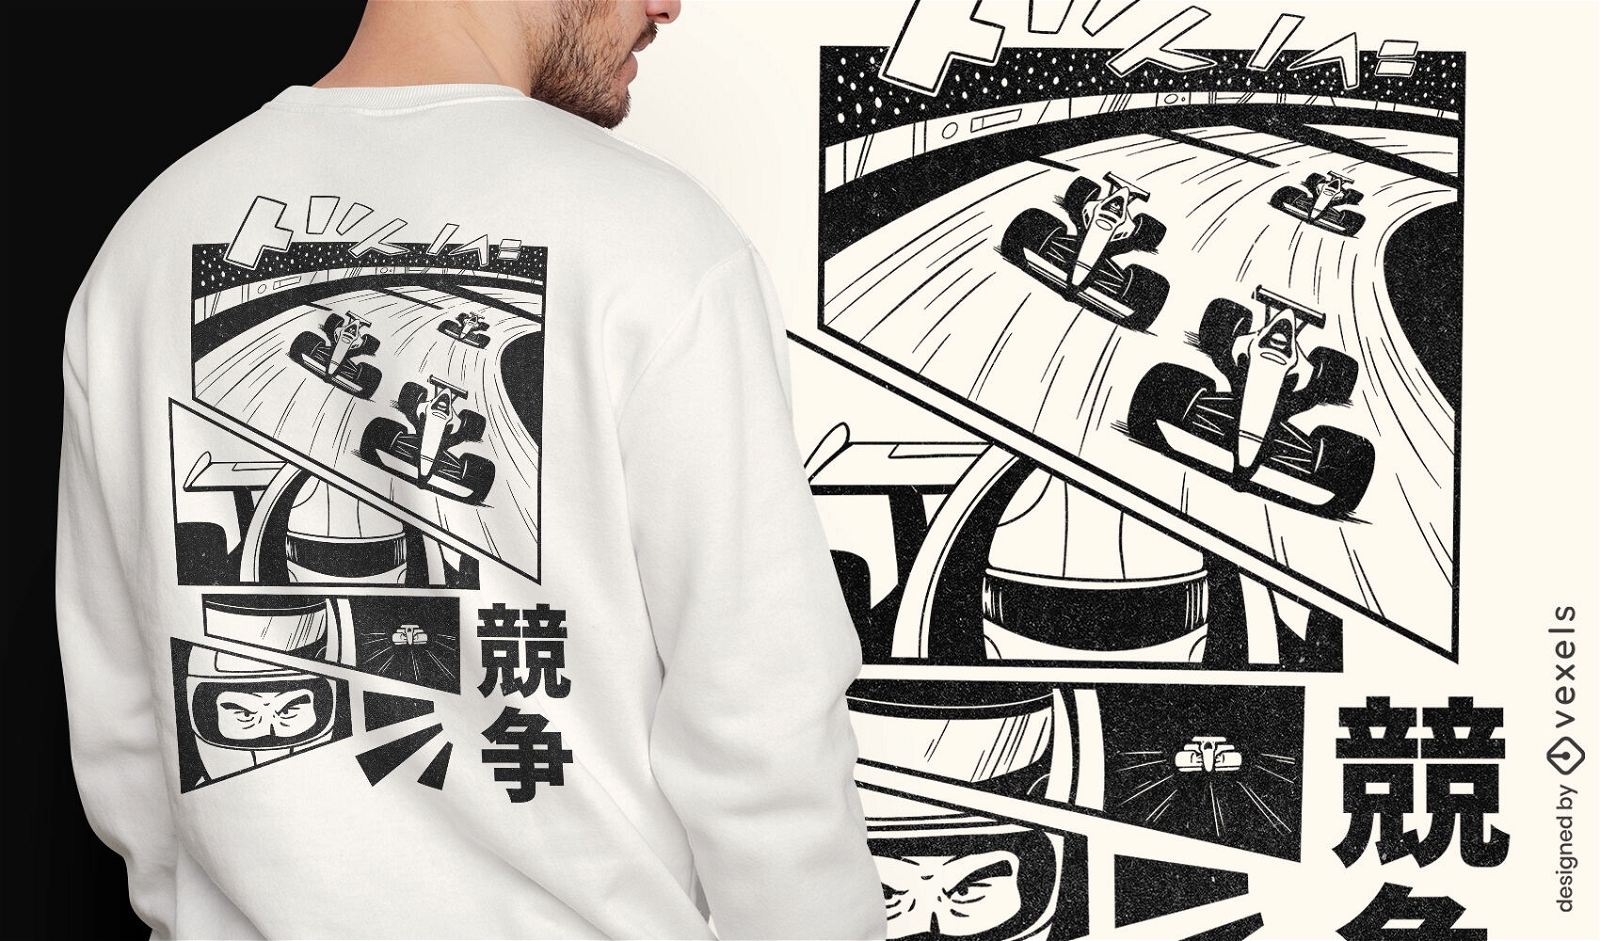 Japanese racing car comic book t-shirt psd